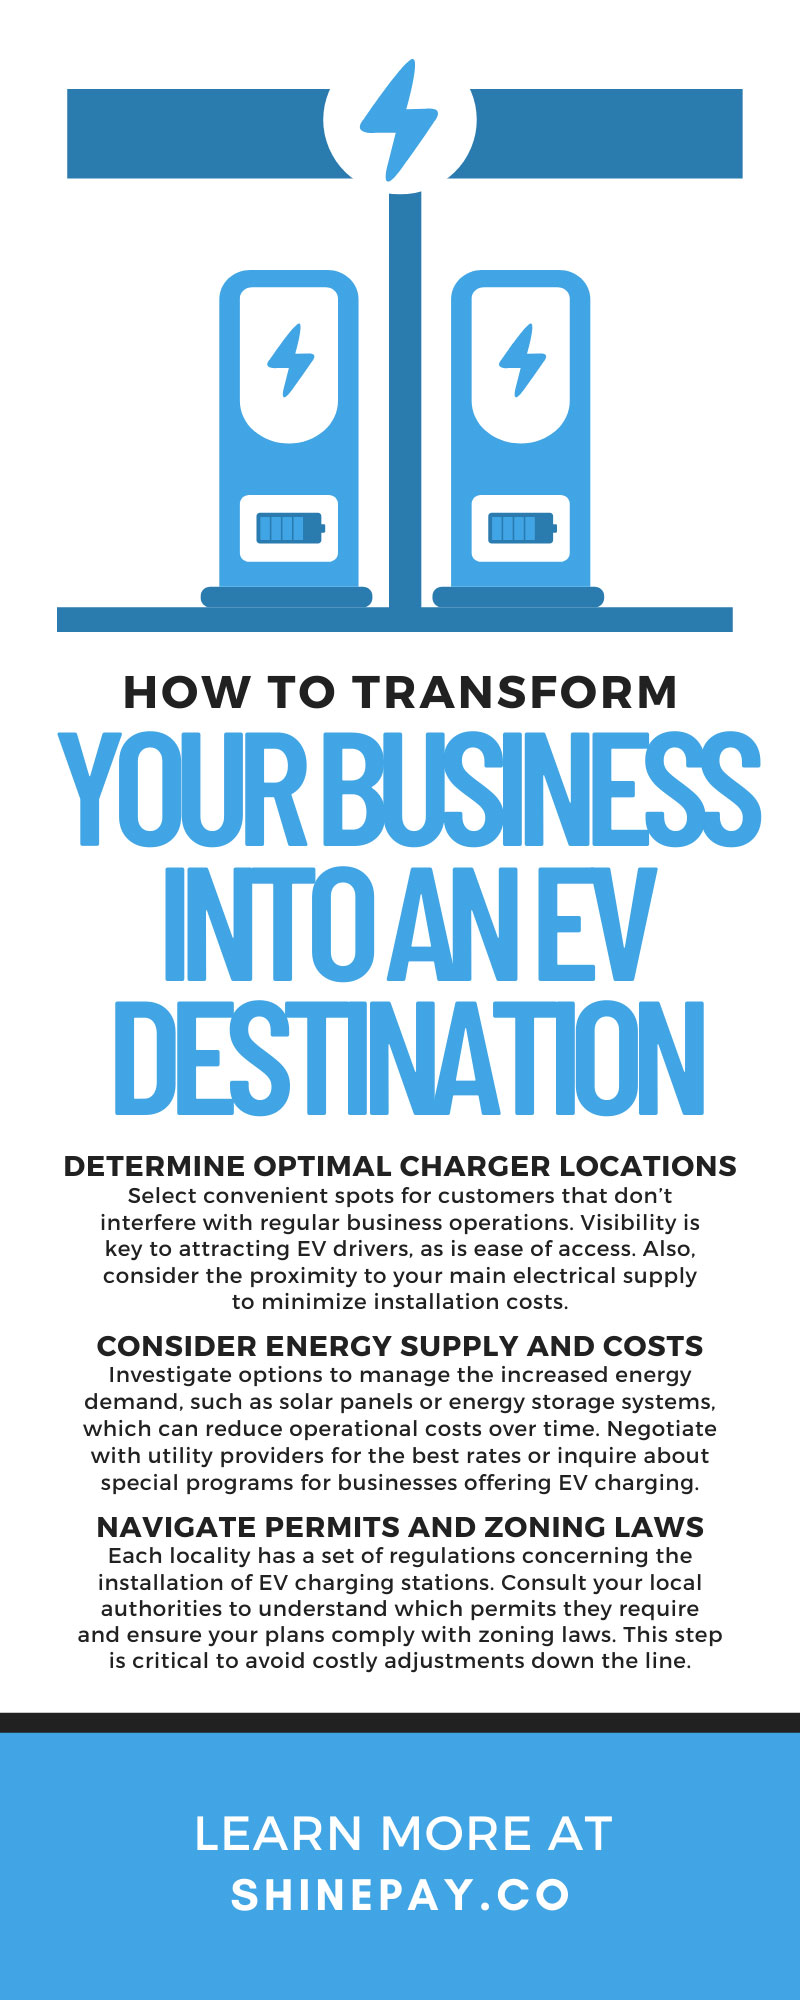 How To Transform Your Business Into an EV Destination
